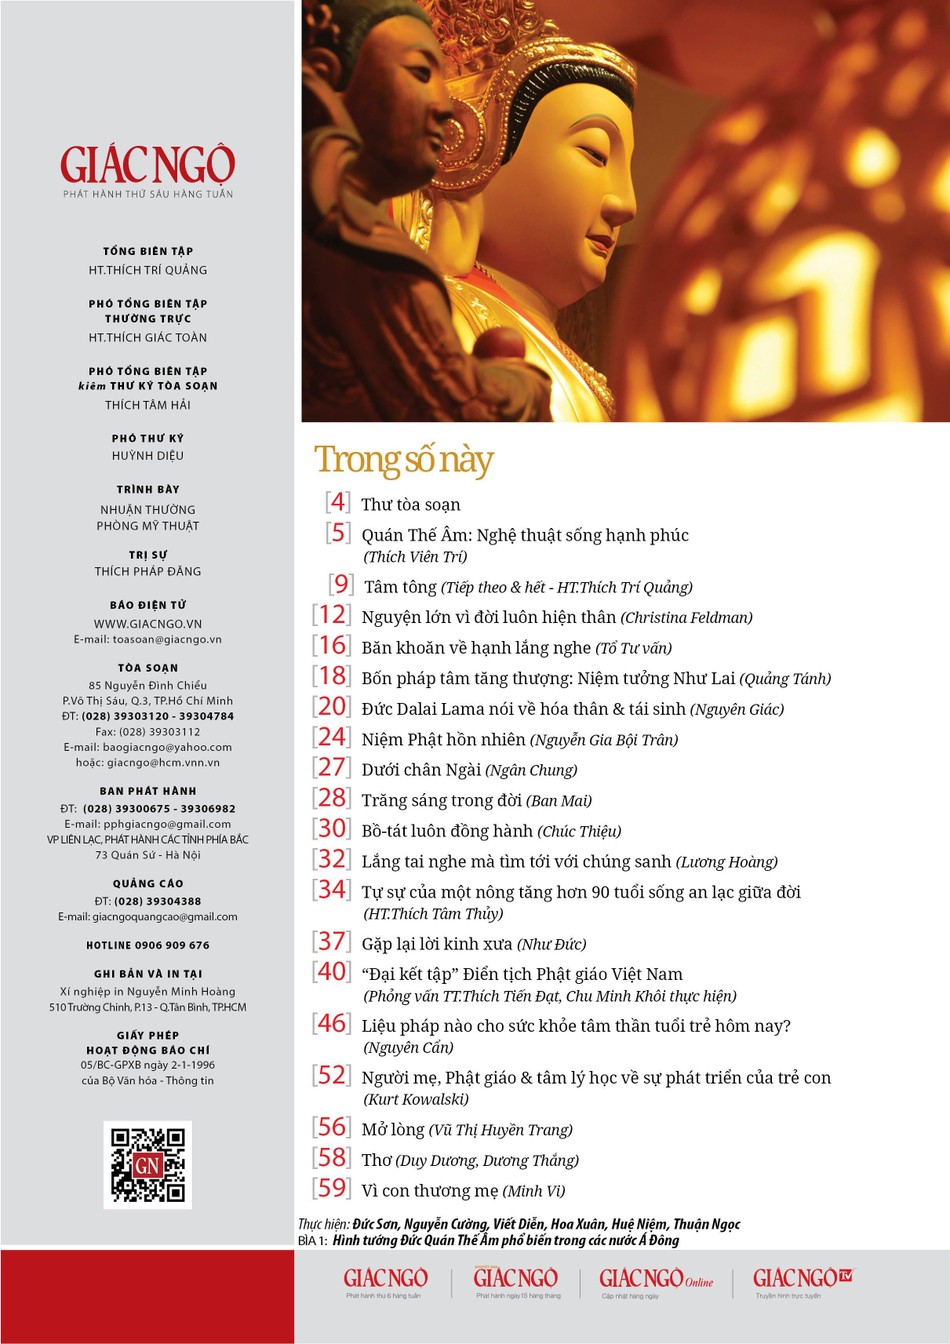 Nghe hết mọi lời thế gian” - Báo Giác Ngộ: Bạn đã từng muốn tìm hiểu về những đức tính của Bồ Tát và Phật giáo? Hãy đến với Báo Giác Ngộ để tìm hiểu và cảm nhận rõ hơn về triết lý Phật giáo - \